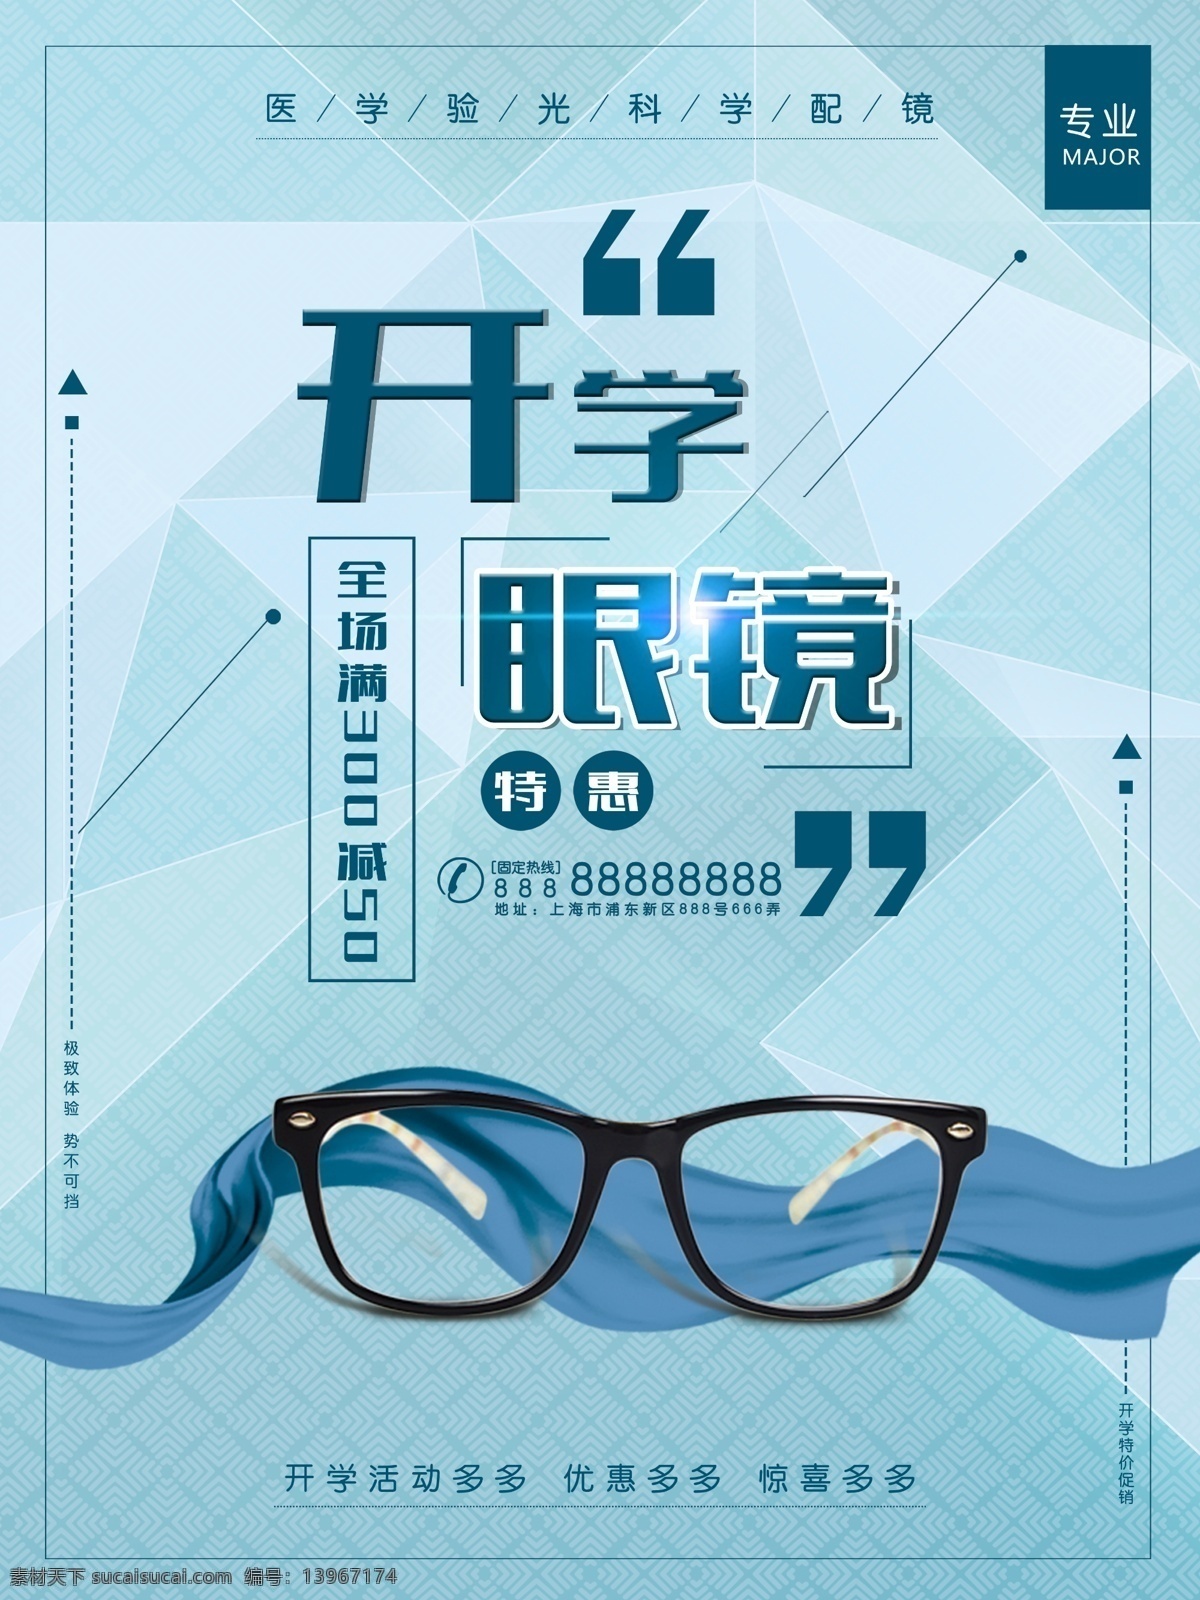 时尚 大气 开学 眼镜 促销 海报 开学季 眼镜海报 眼镜广告 眼镜宣传 眼镜促销 开学眼镜海报 眼镜广告设计 眼镜素材 眼镜背景 眼镜海报素材